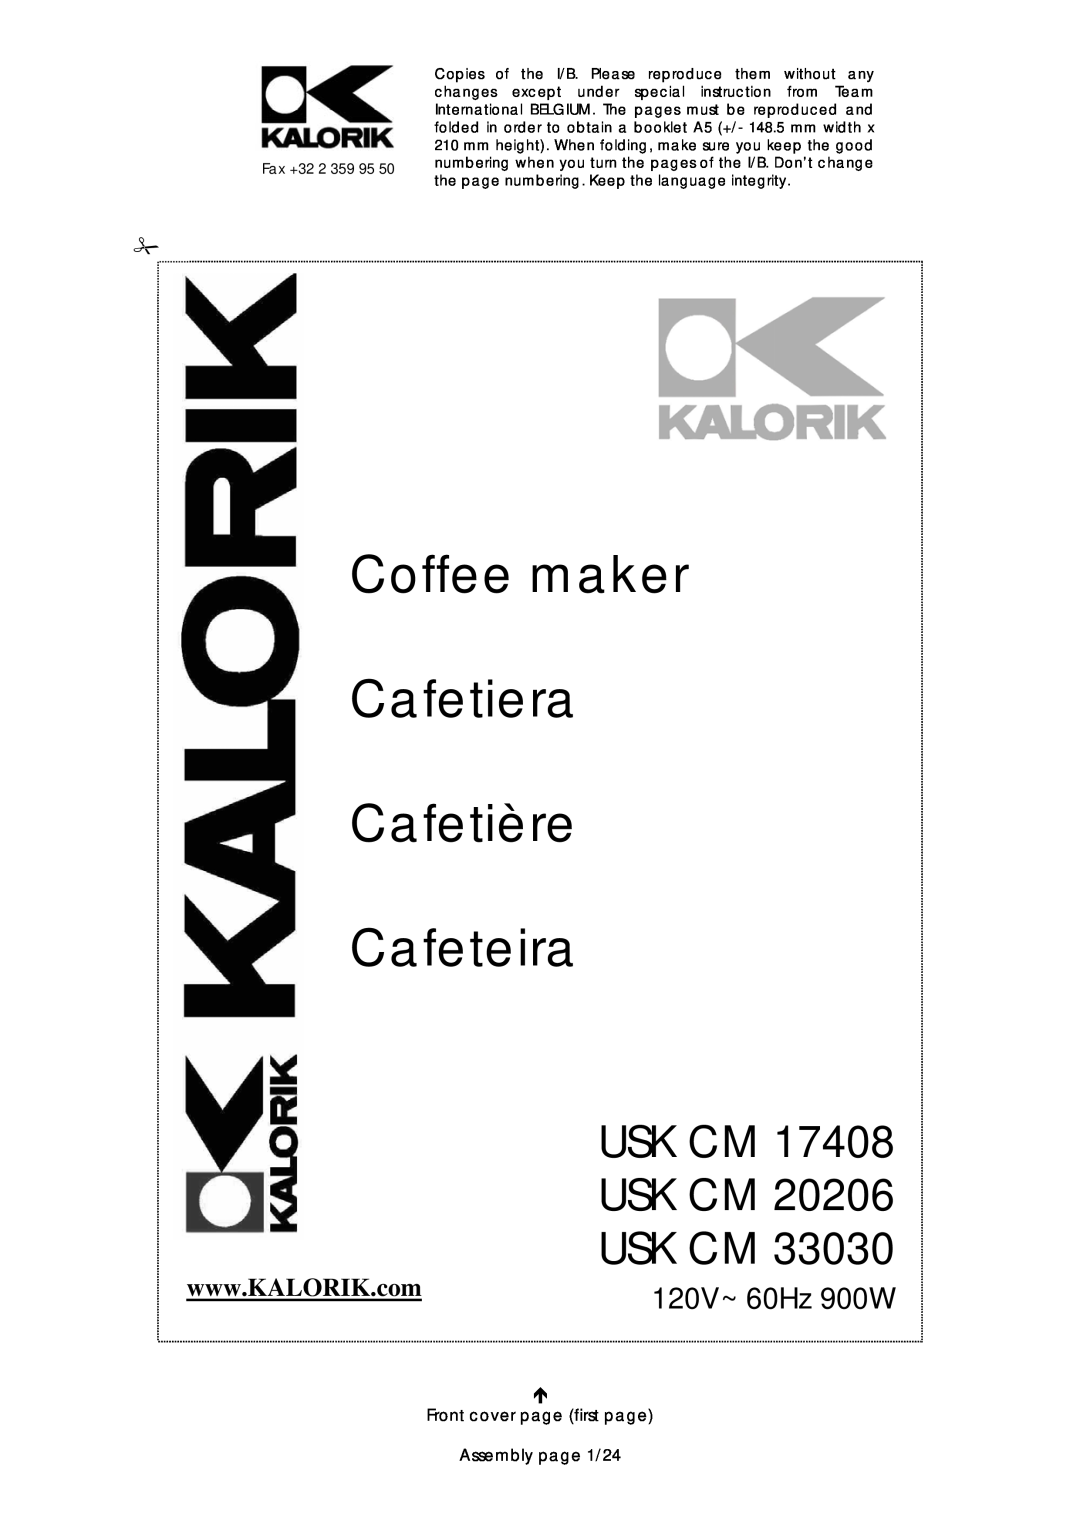 Kalorik USK CM 17408, USK CM 33030, USK CM 20206 manual Usk Cm, 120V~ 60Hz 900W, Coffee maker Cafetiera Cafetière Cafeteira 